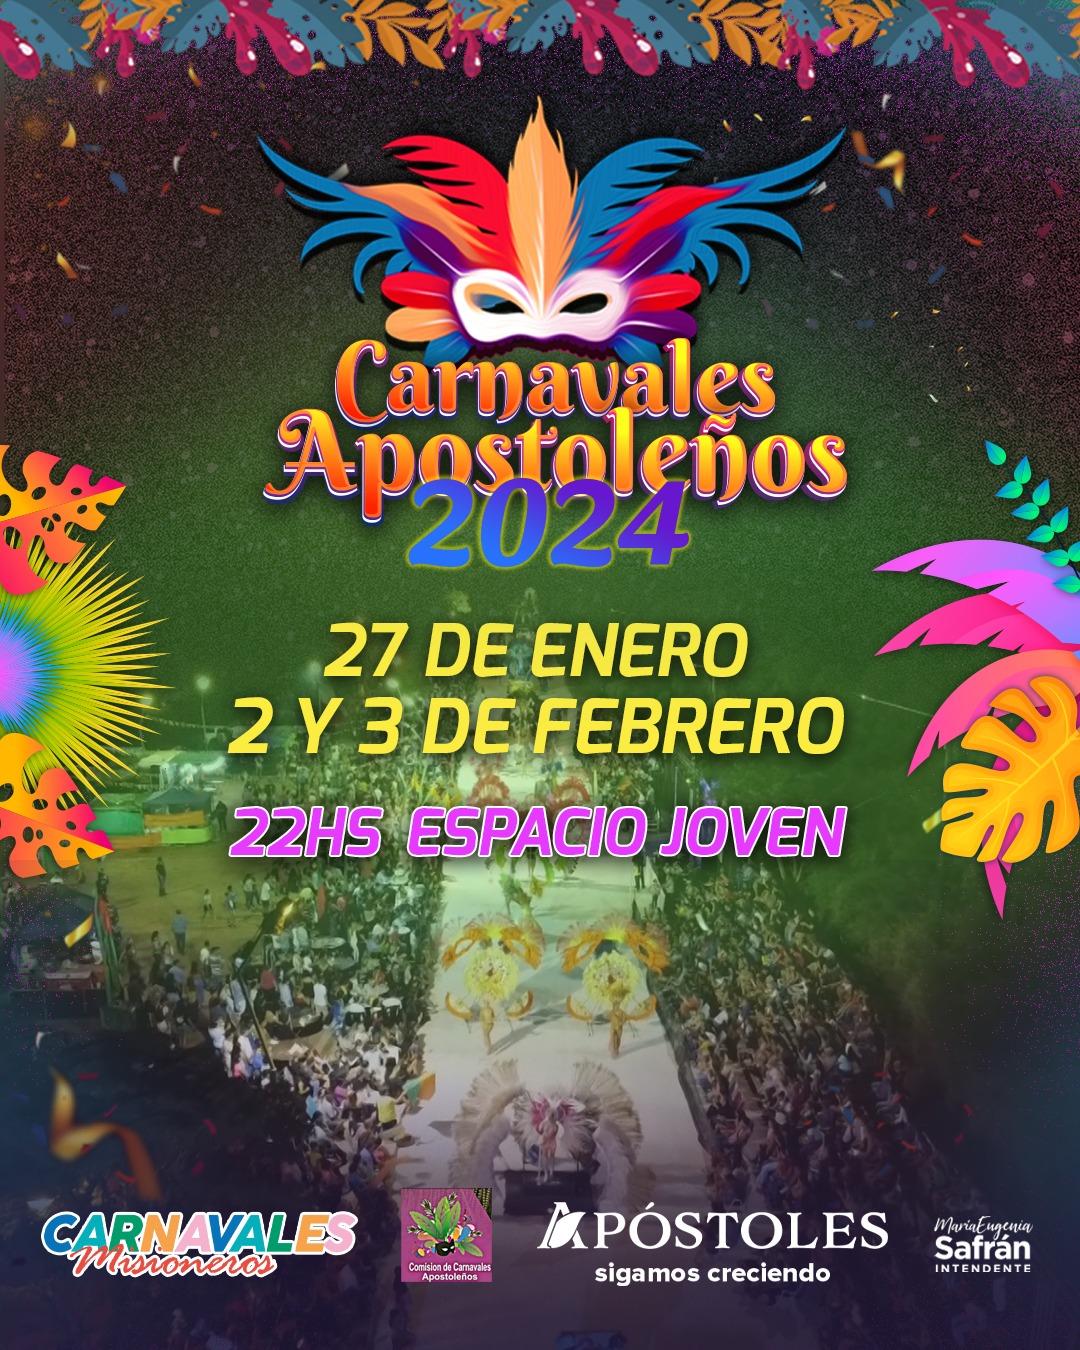 Confirman fechas de los Carnavales Apostoleños imagen-1